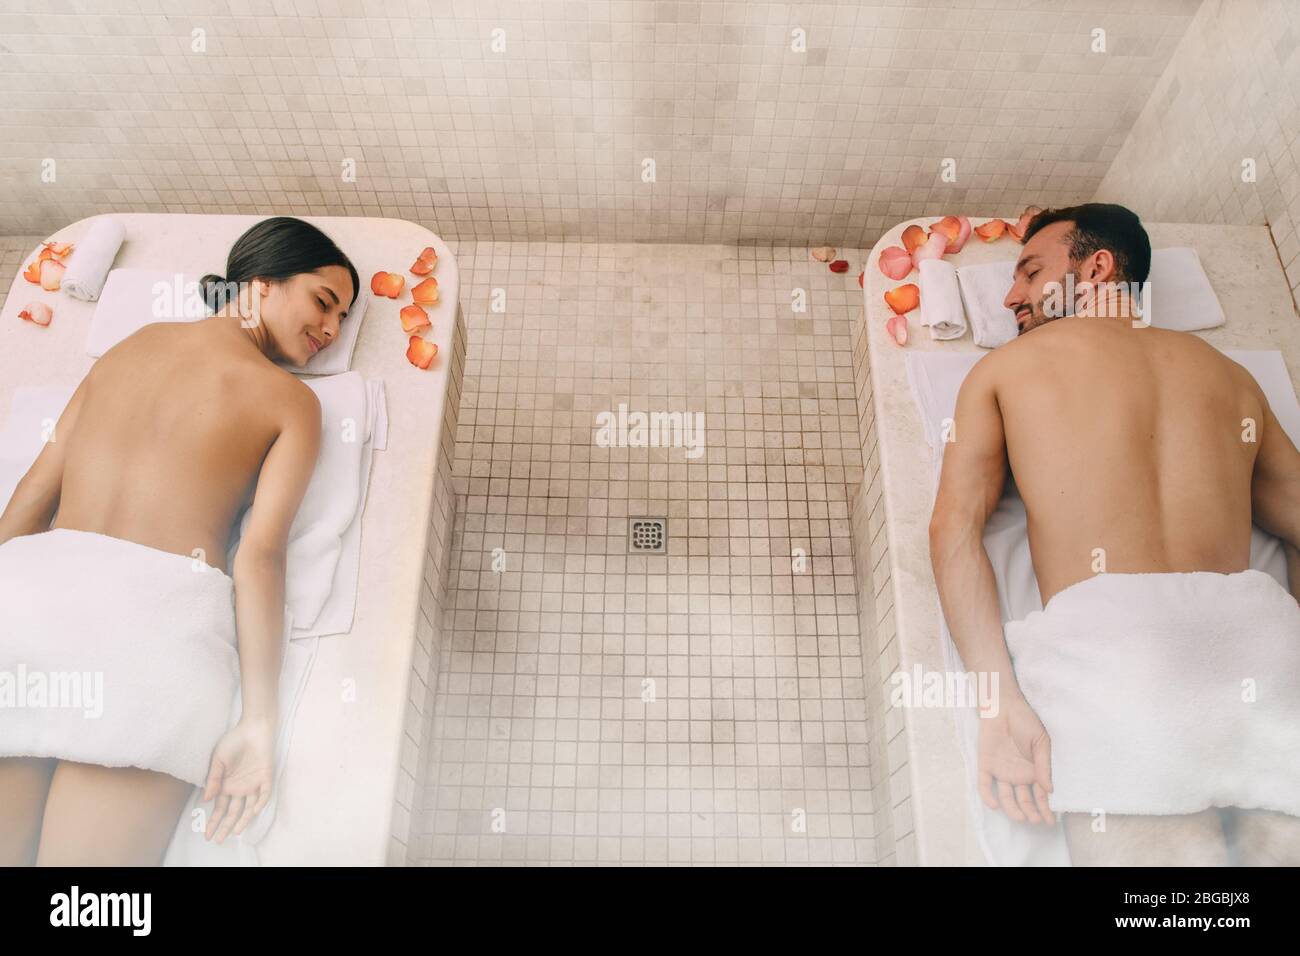 Un jeune couple magnifique a passé du temps libre dans un bain turc. La vapeur chaude réchauffait les corps d'un homme et d'une femme dans un hammam Banque D'Images